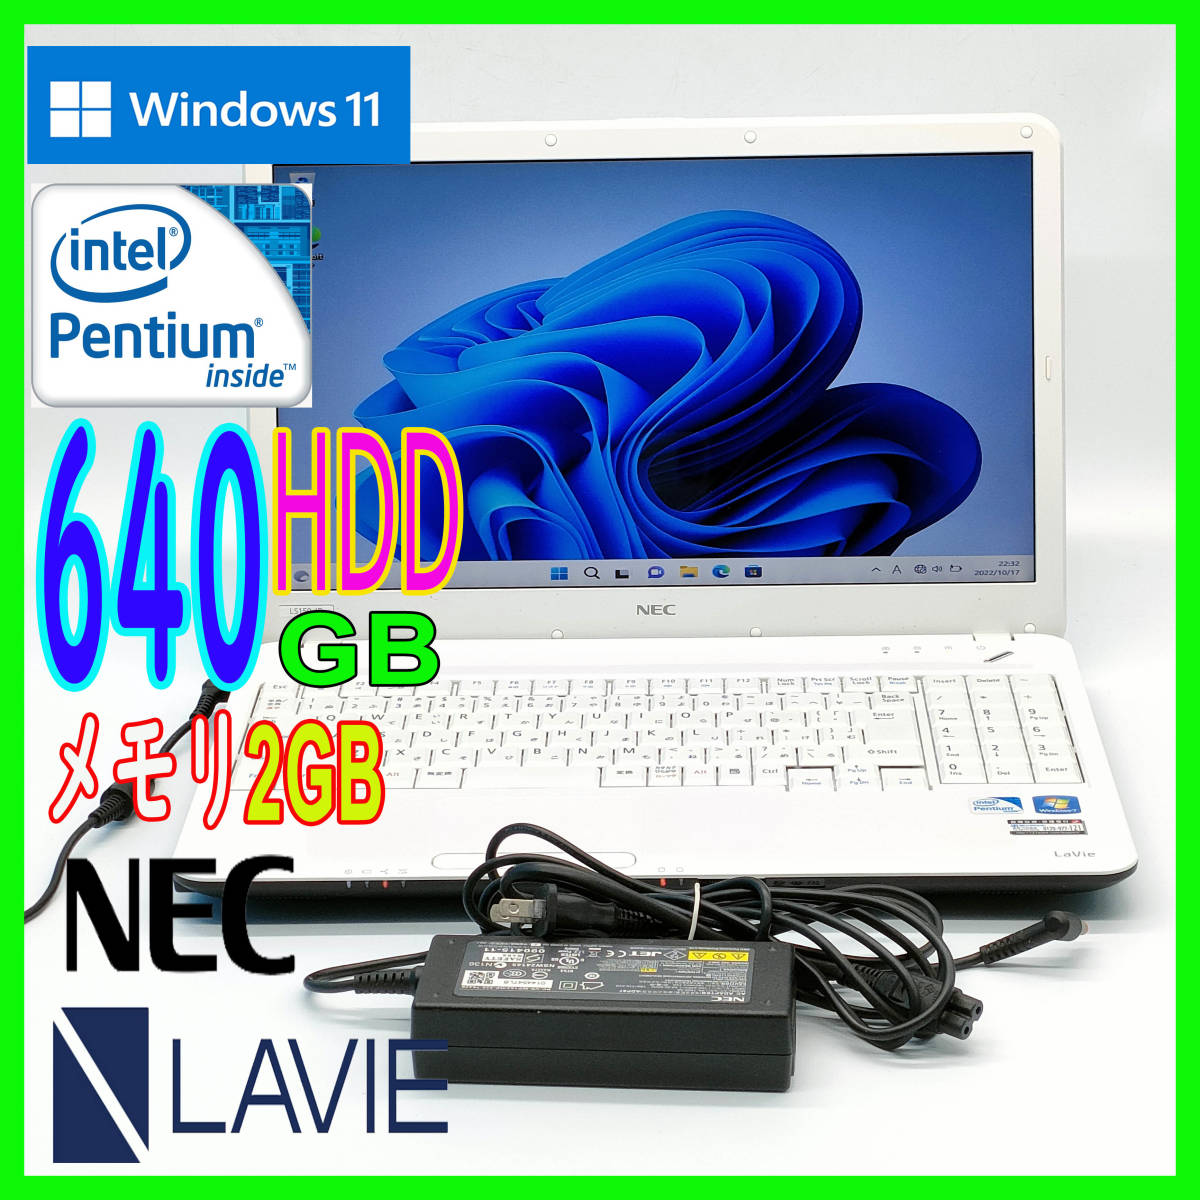 売れ筋ランキング HDD640GB NEC LaVie オススメ品 asakusa.sub.jp